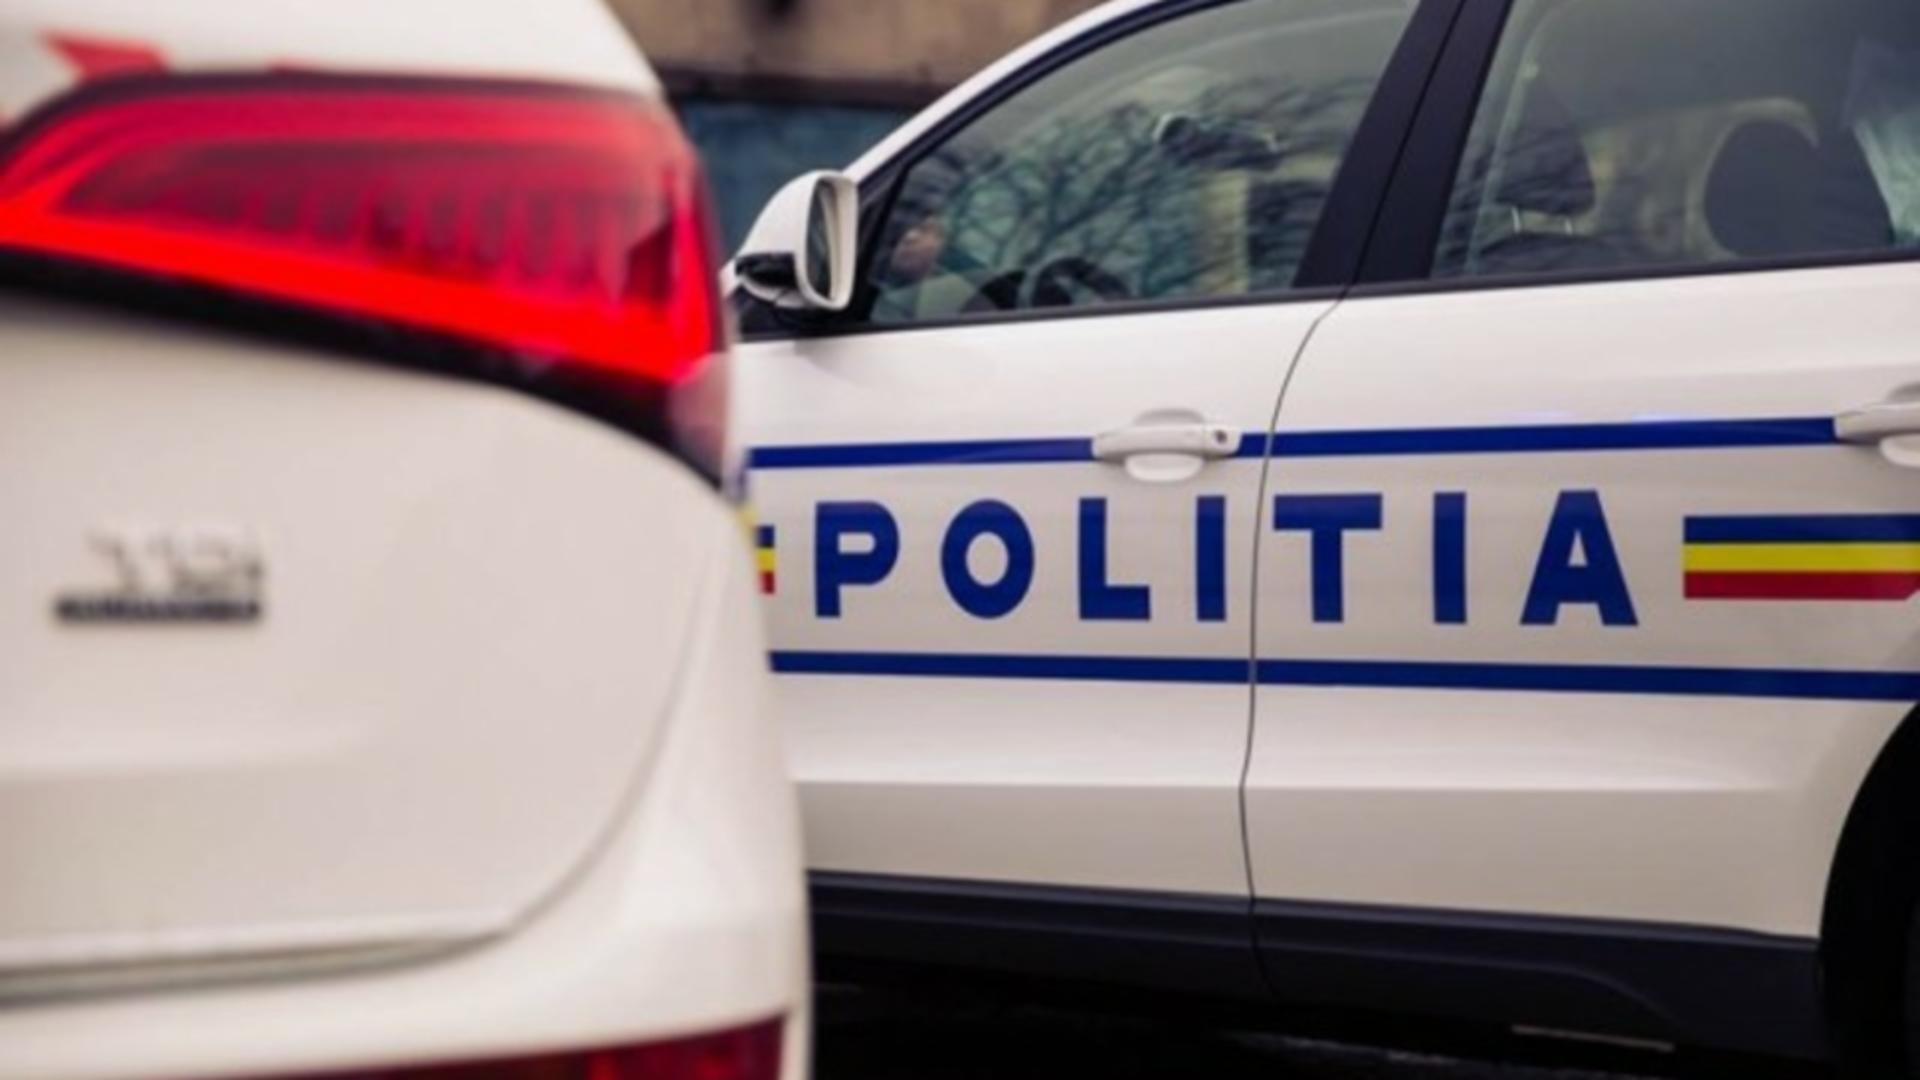 Un poliţist se afla în maşină lângă şoferul austriac care circula cu numere false şi sub influenţa substanţelor interzise, în Arad – Video